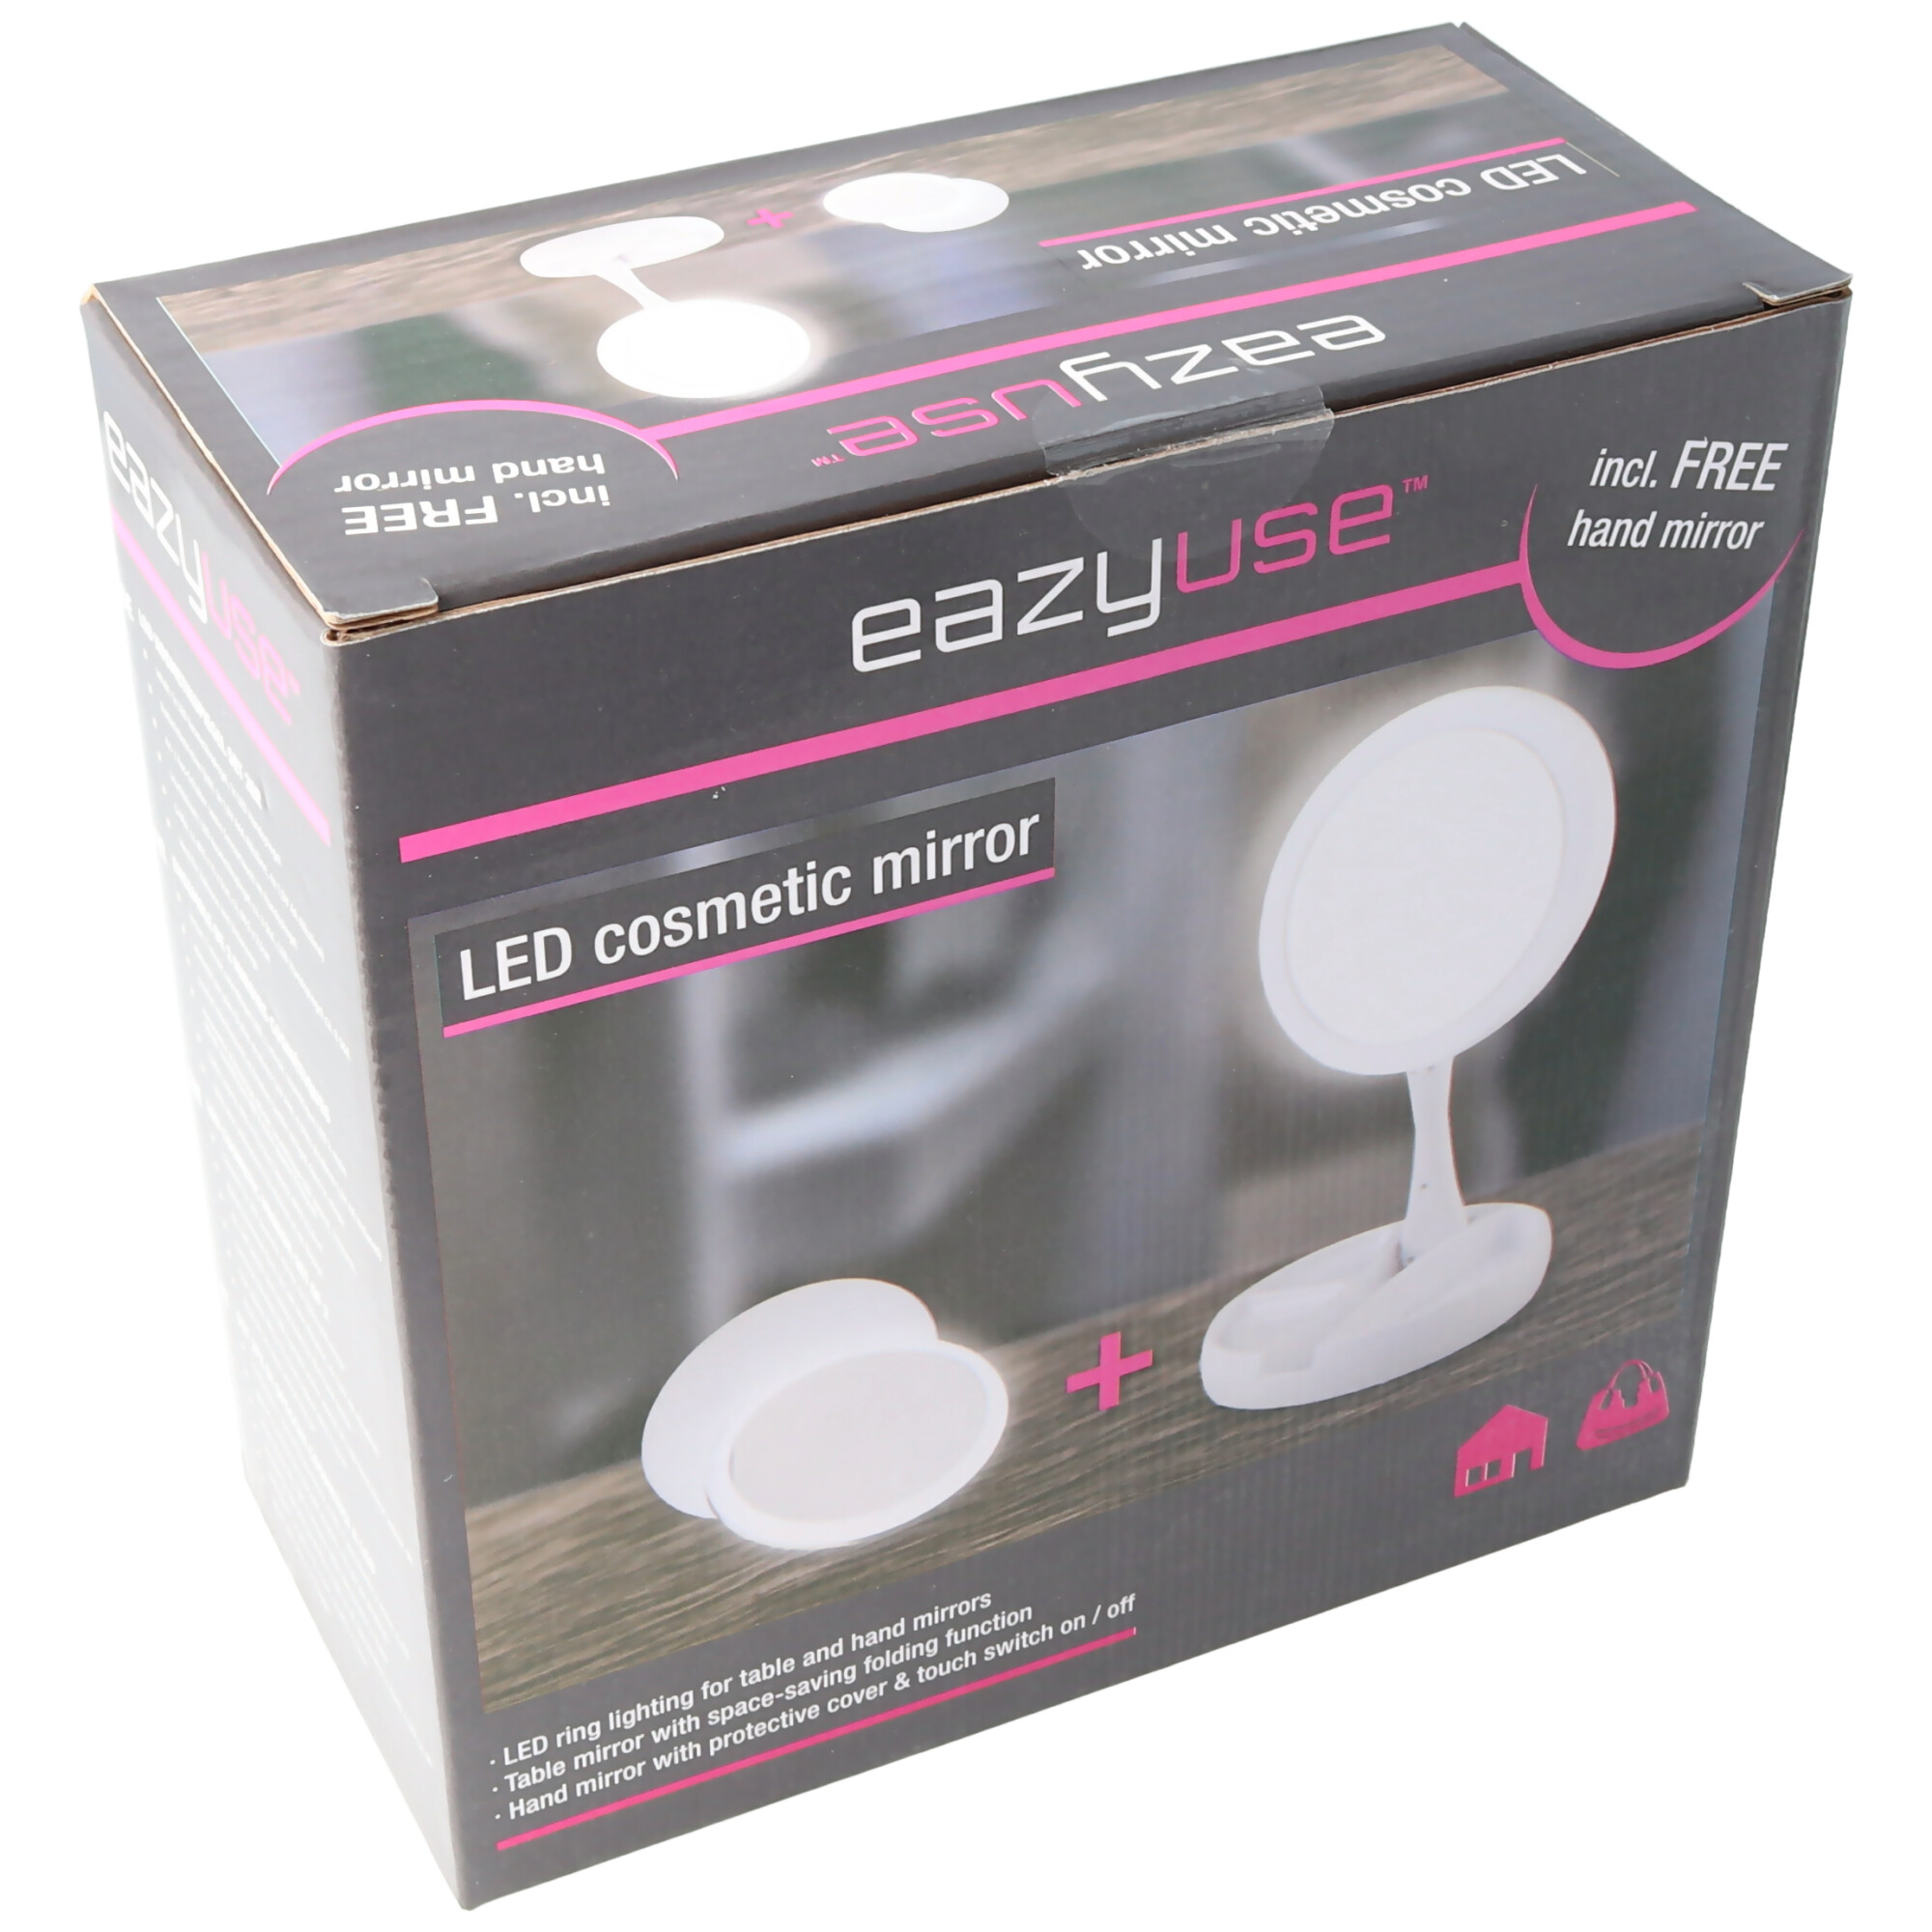 LED Tisch Kosmetikspiegel weiss mit AA Batterien unn inklusive Gratis Handspiegel